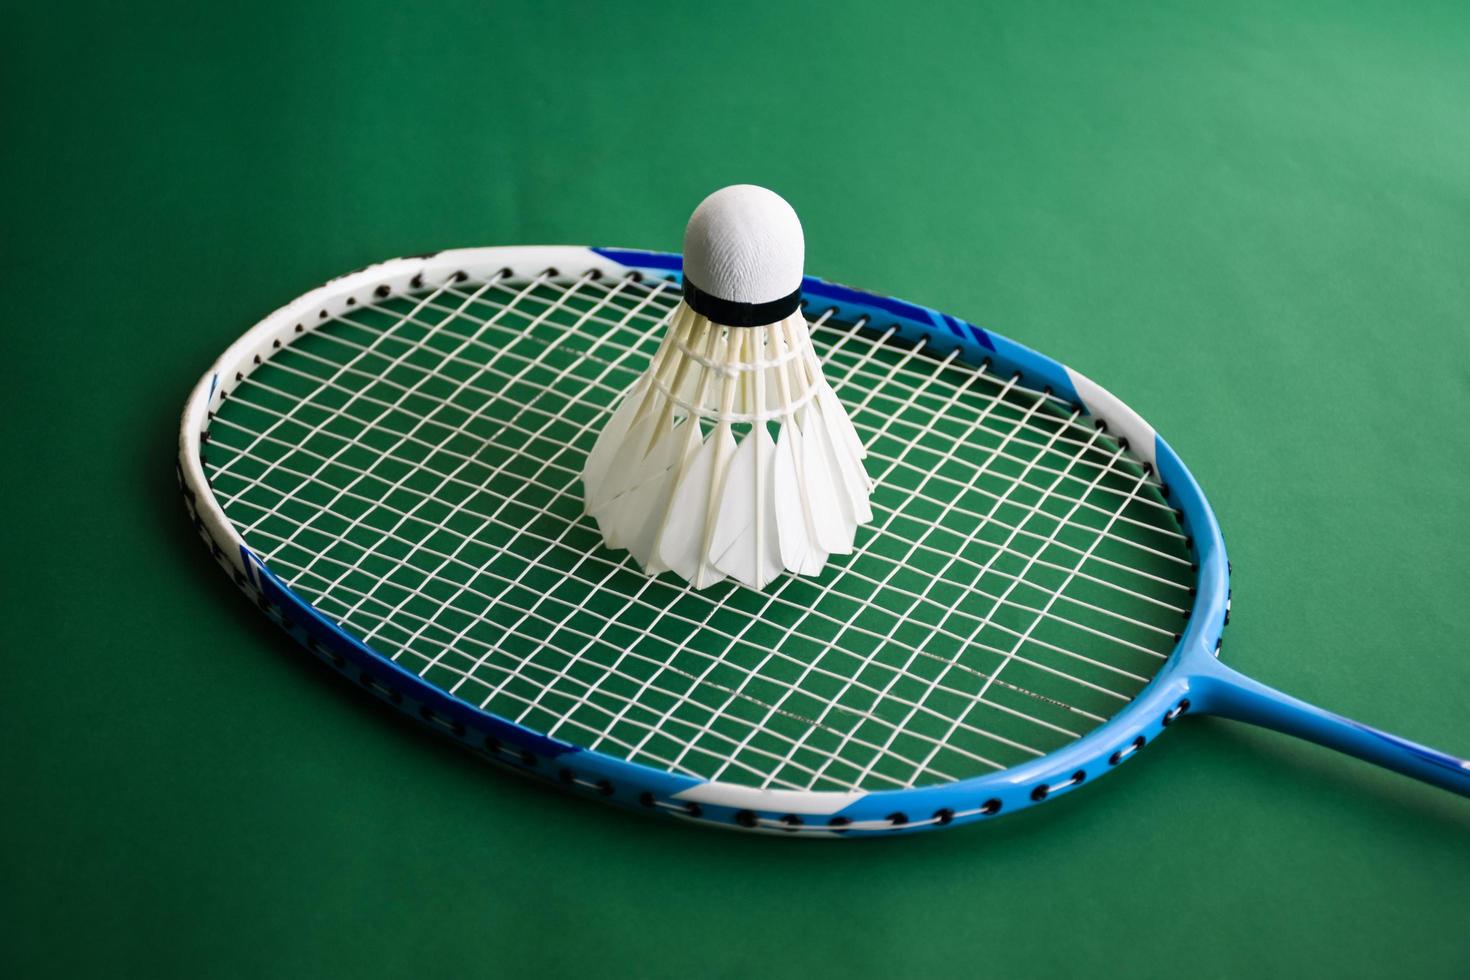 Badminton sports equipments, shuttlecocks, racket, grip, on floor of indoor badminton court. photo